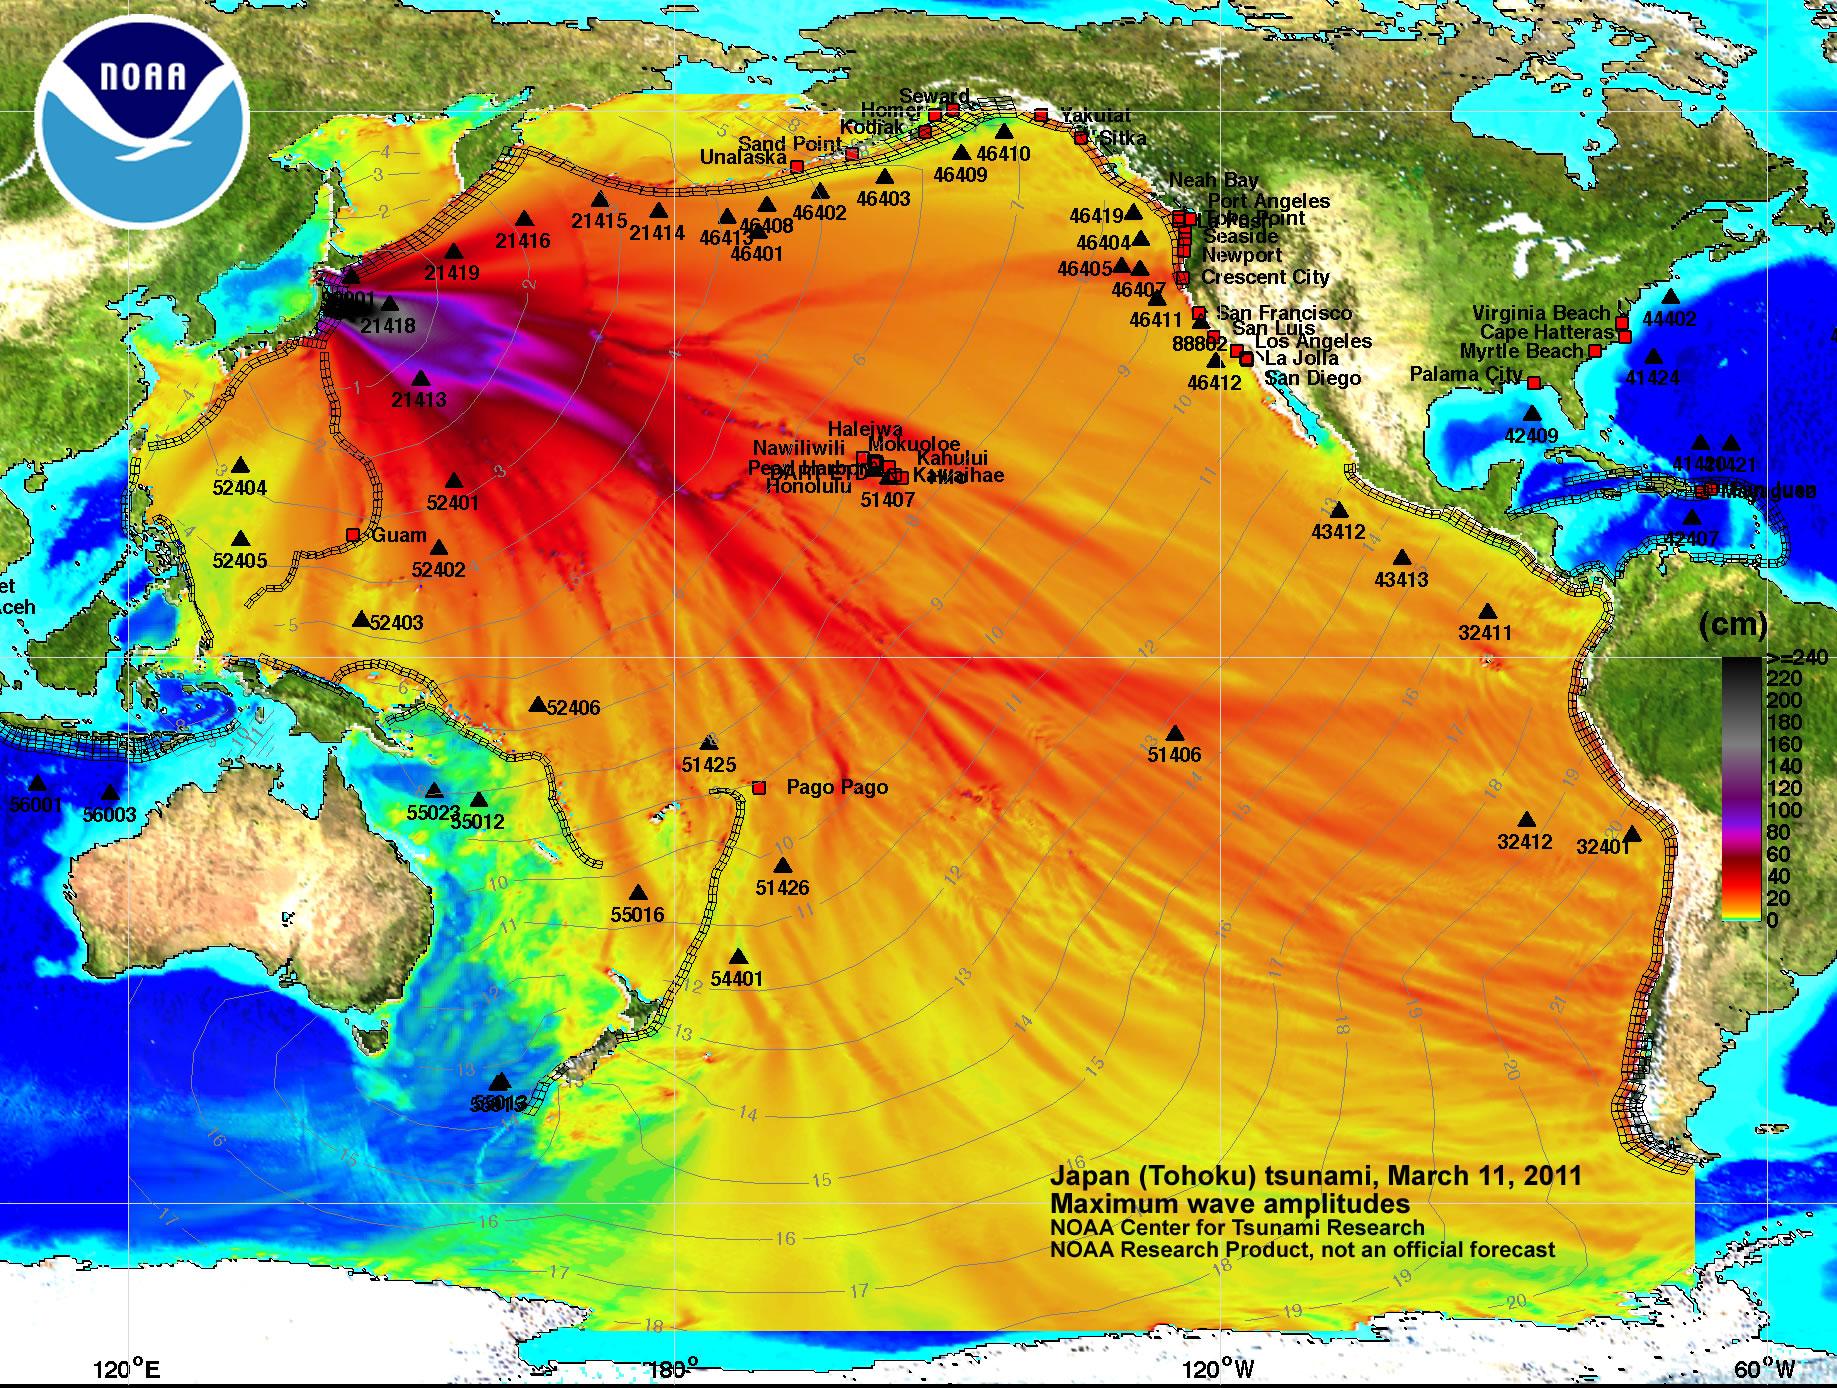 福岛核事故是否会污染全球海洋会不会通过海洋蒸发形成雨水污染全球